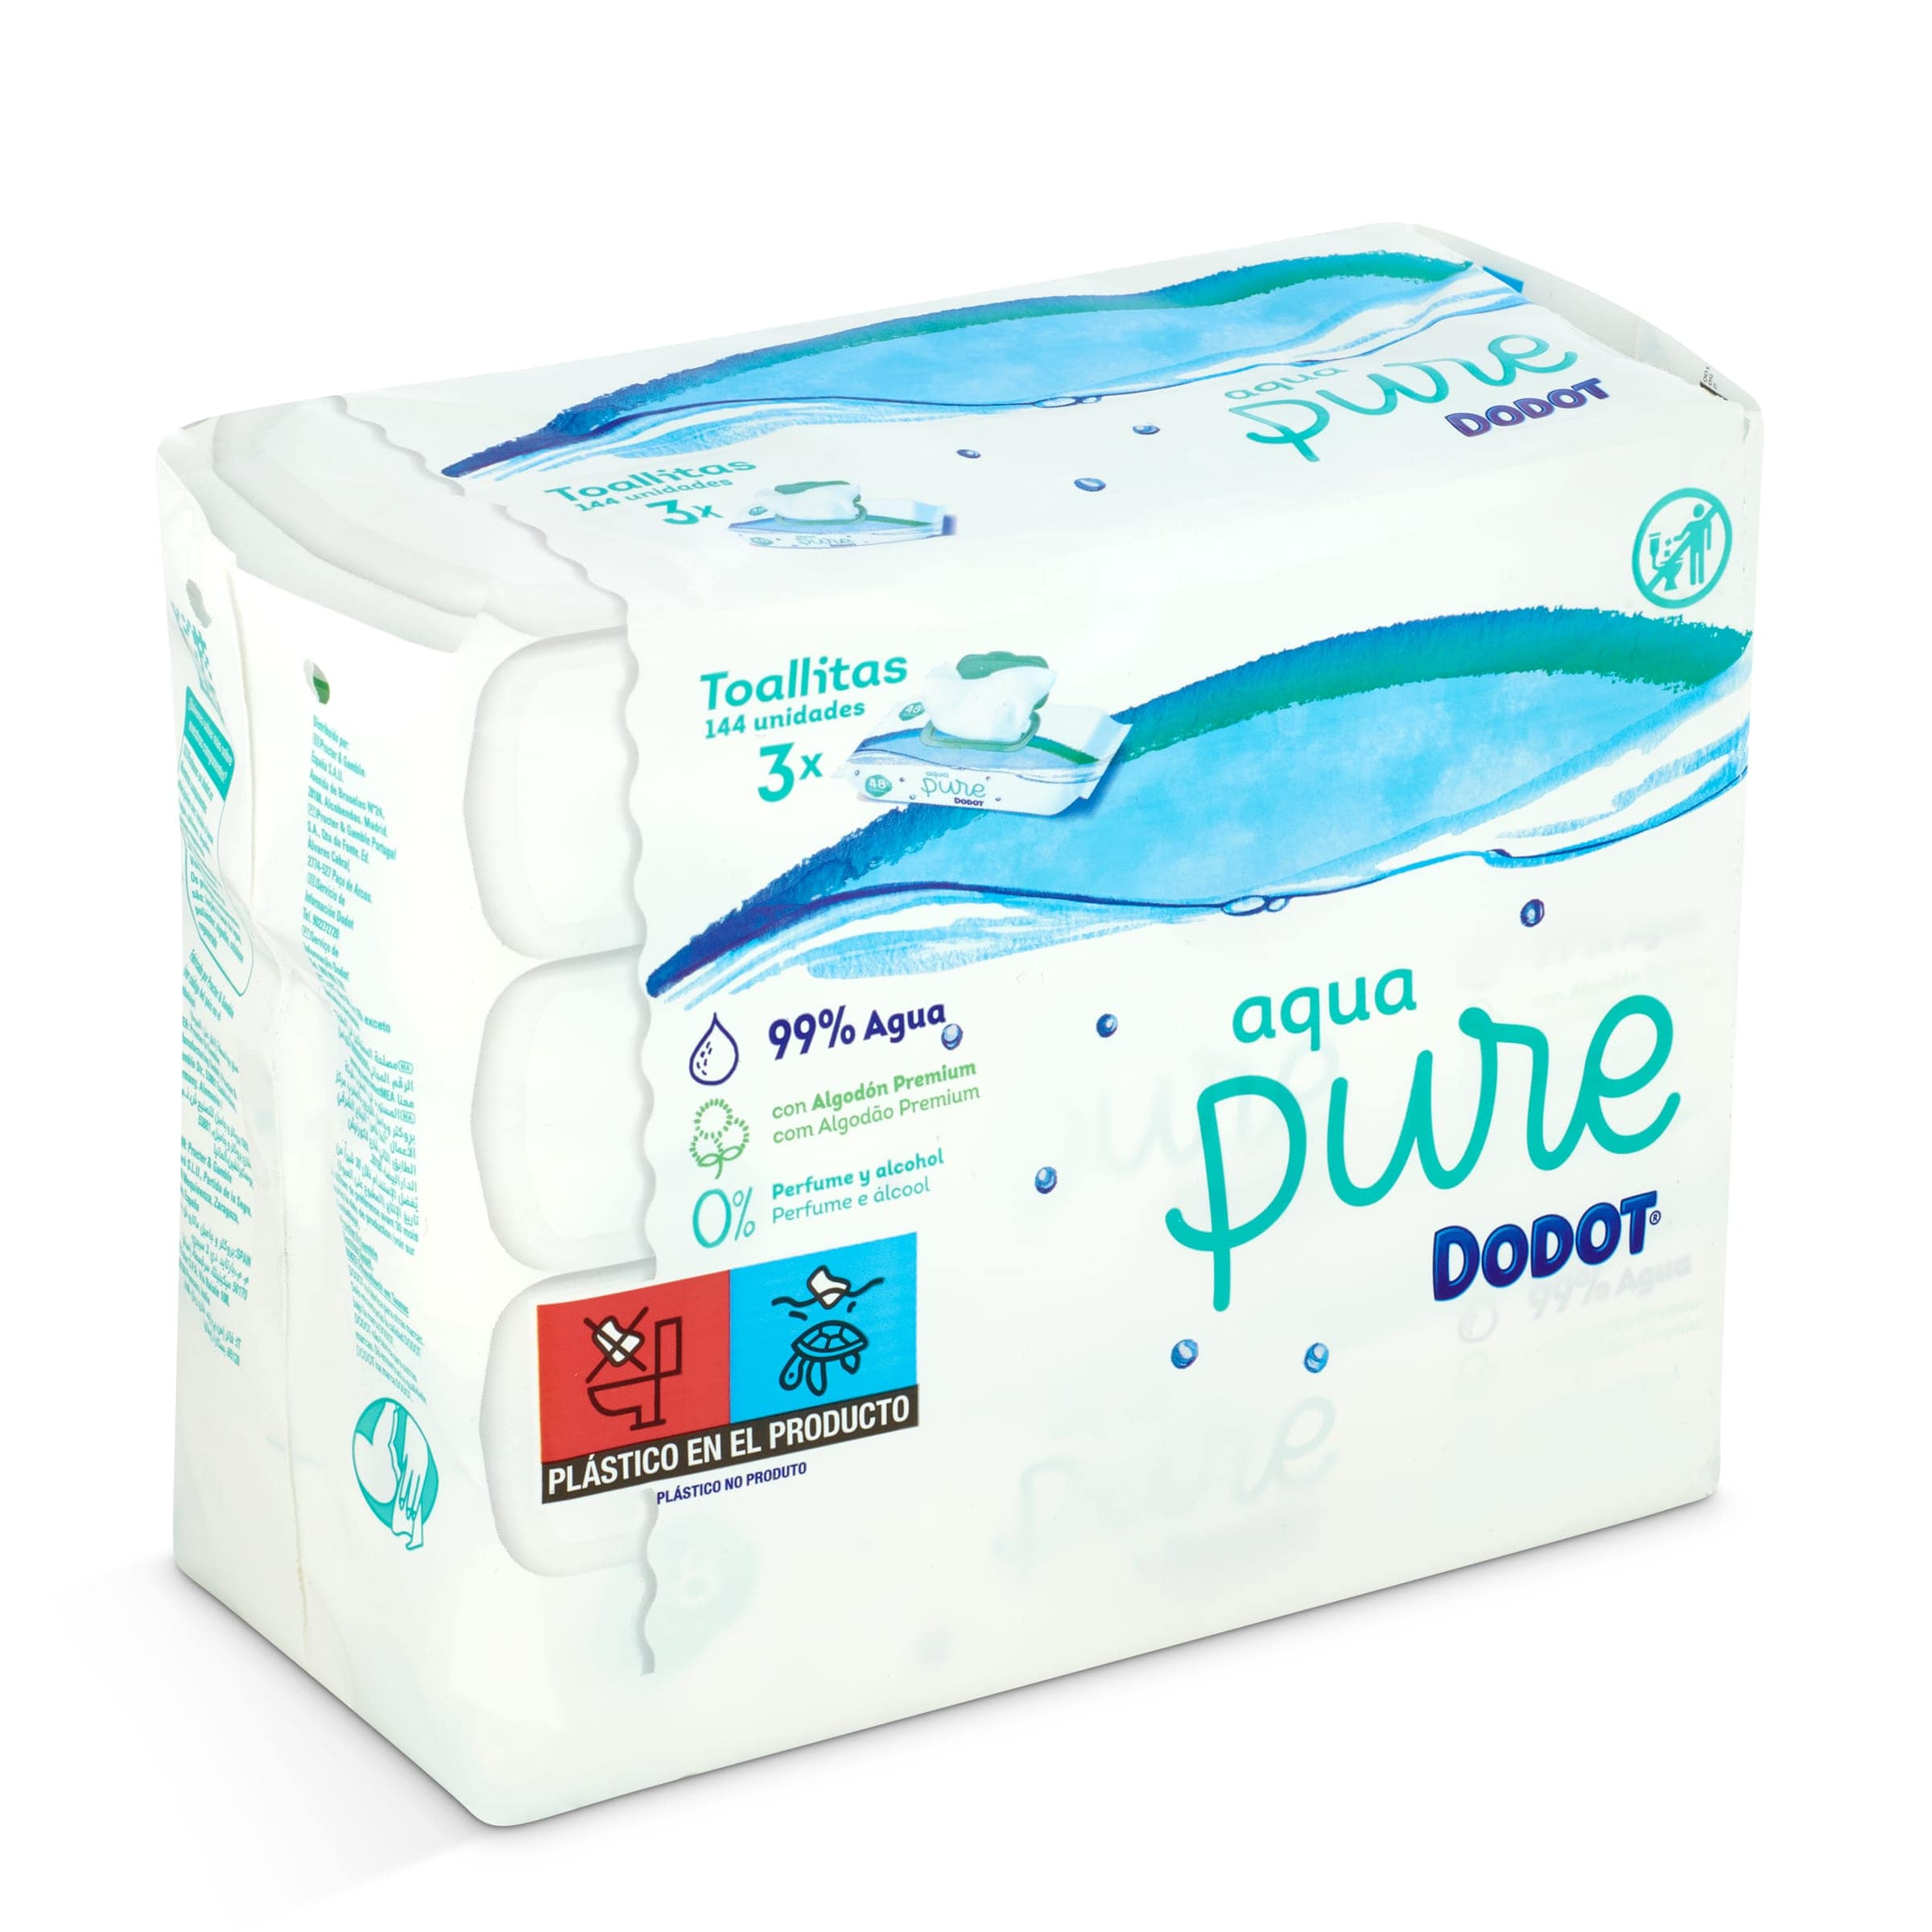 9 Envases de toallitas higiénicas Dodot Aqua Pure para bebé (9×48= 432  toallitas) por sólo 18,36€